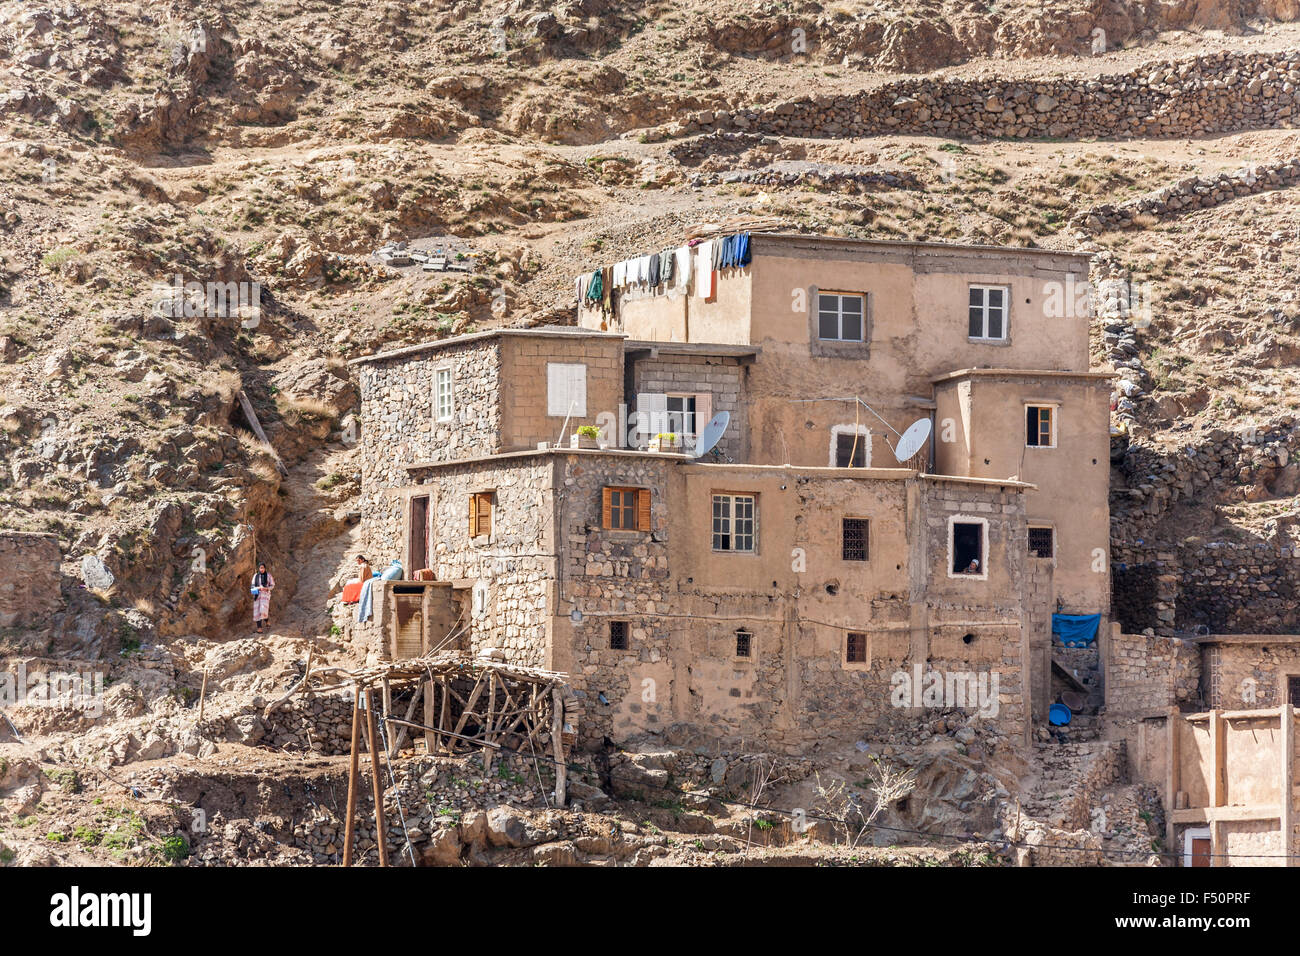 Village berbère typique maison en pierre construite dans les montagnes, Haut Atlas, Maroc, Afrique du Nord Banque D'Images